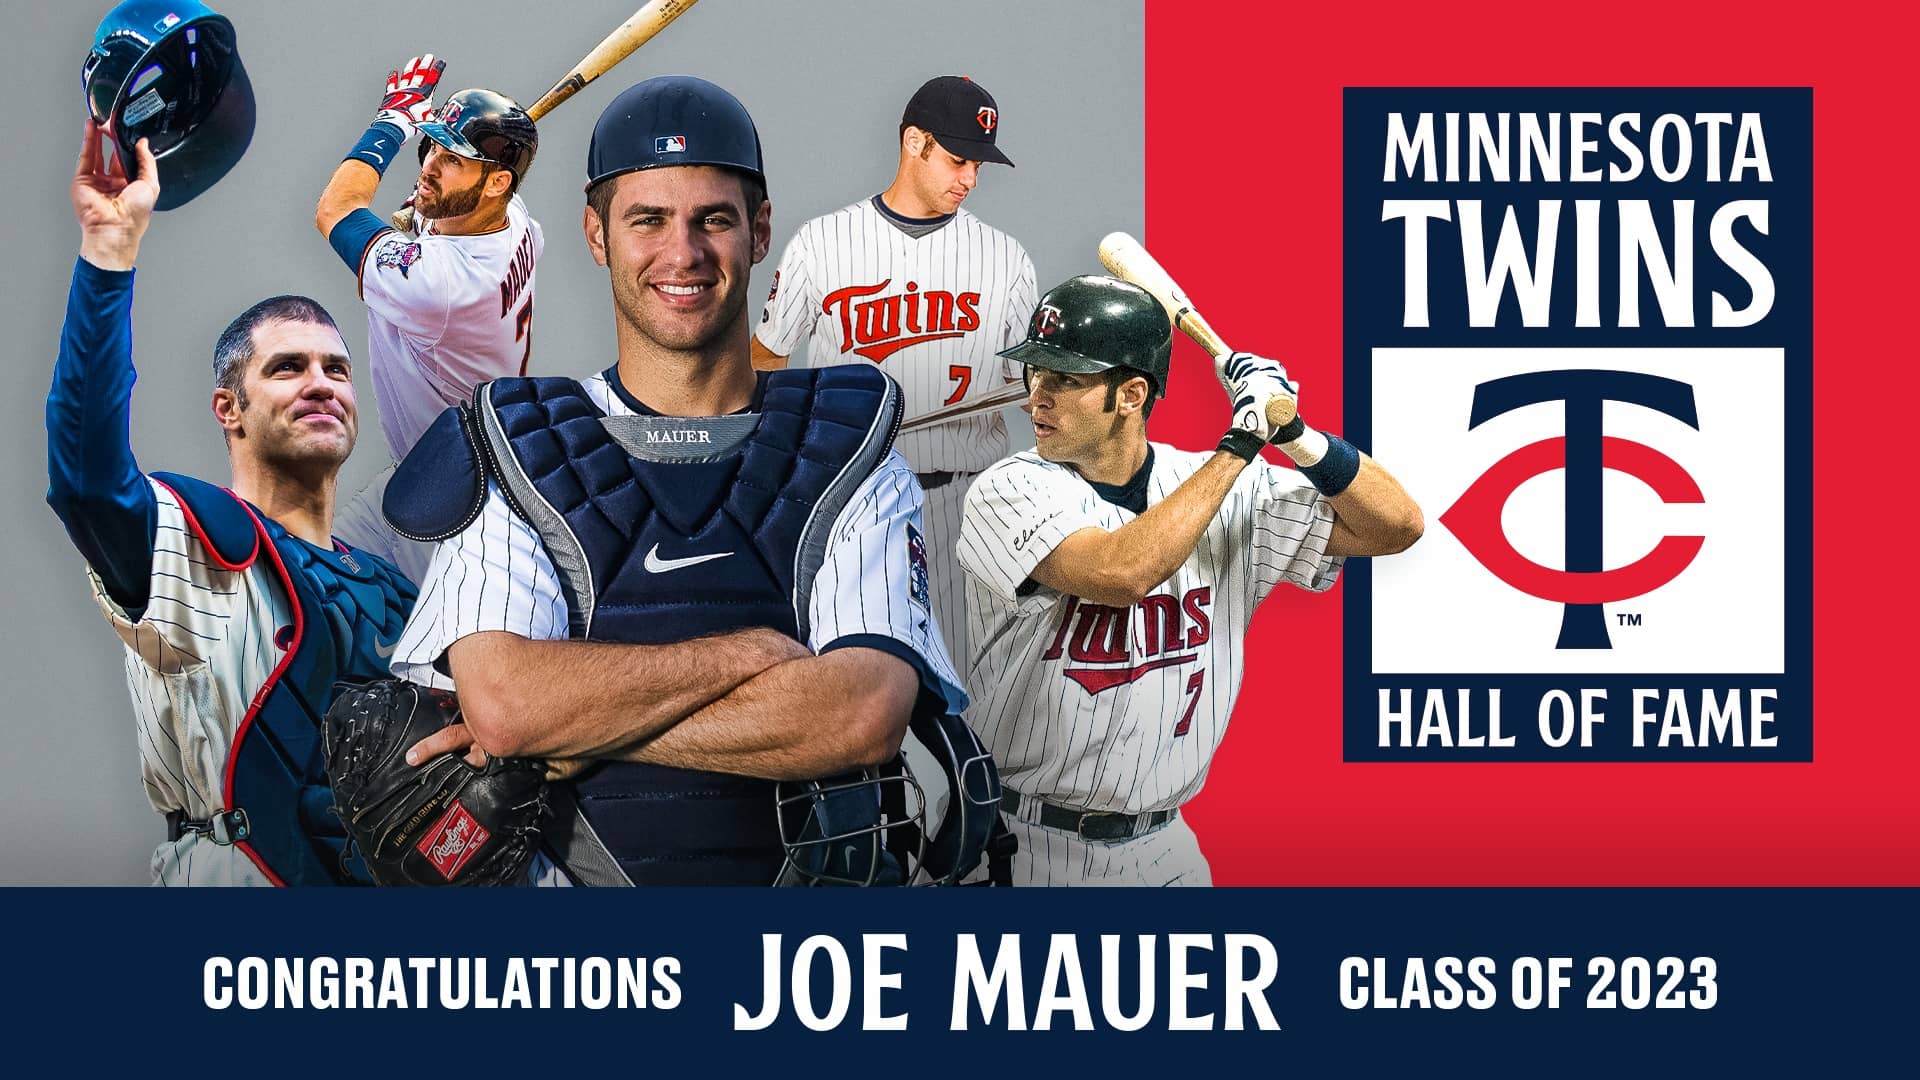 Joe Mauer voted into Minnesota Twins Hall of Fame 2023 class